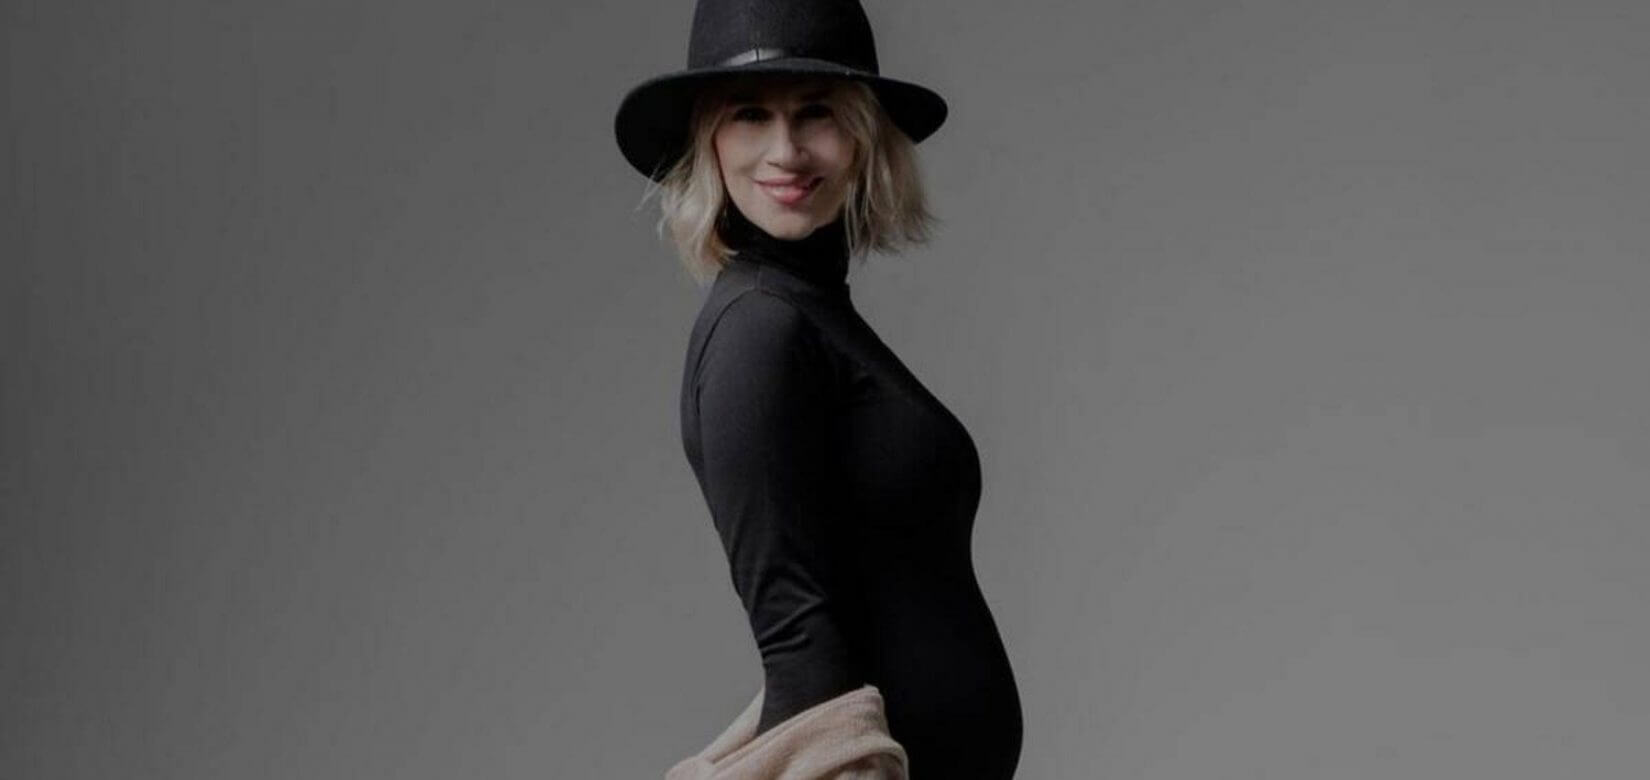 Νάντια Μπουλέ, πόσα κιλά πήρες στον 7ο μήνα της εγκυμοσύνης σου;